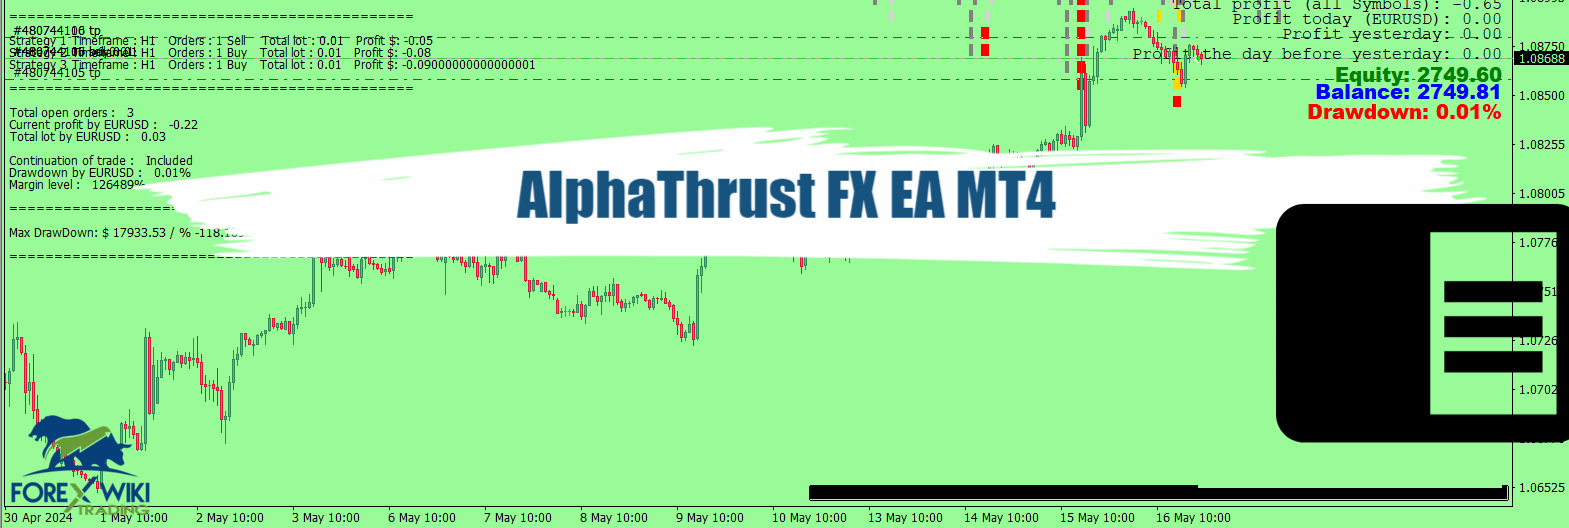 AlphaThrust FX EA MT4 - Free Download 34